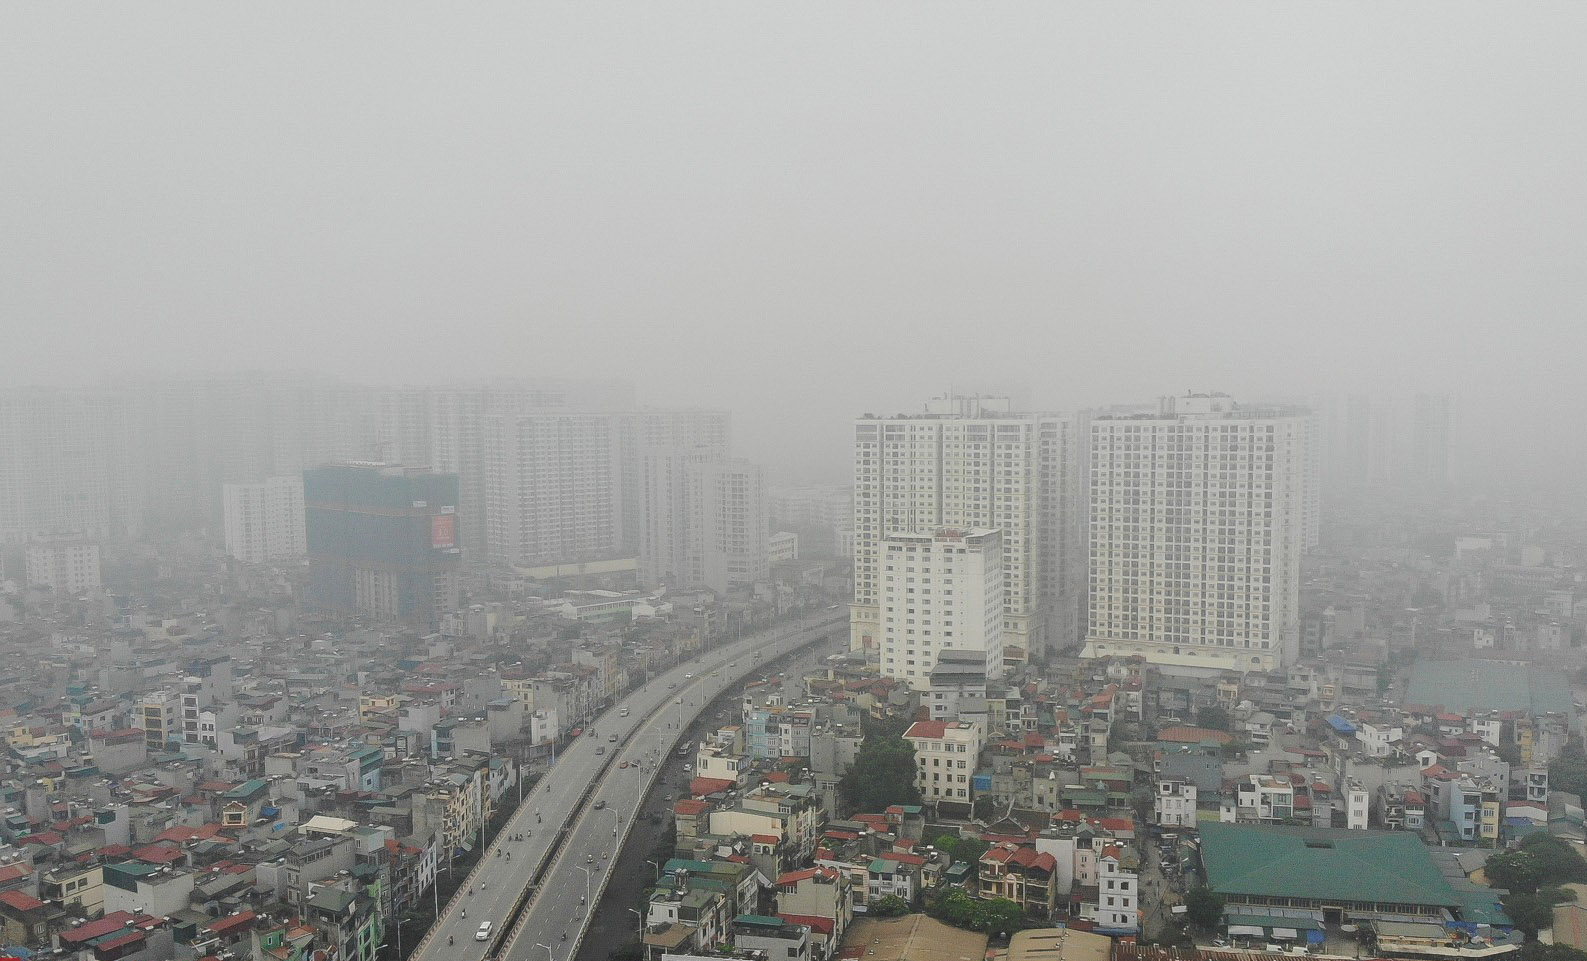 Ô nhiễm không khí ở Hà Nội: Những câu hỏi không dễ trả lời